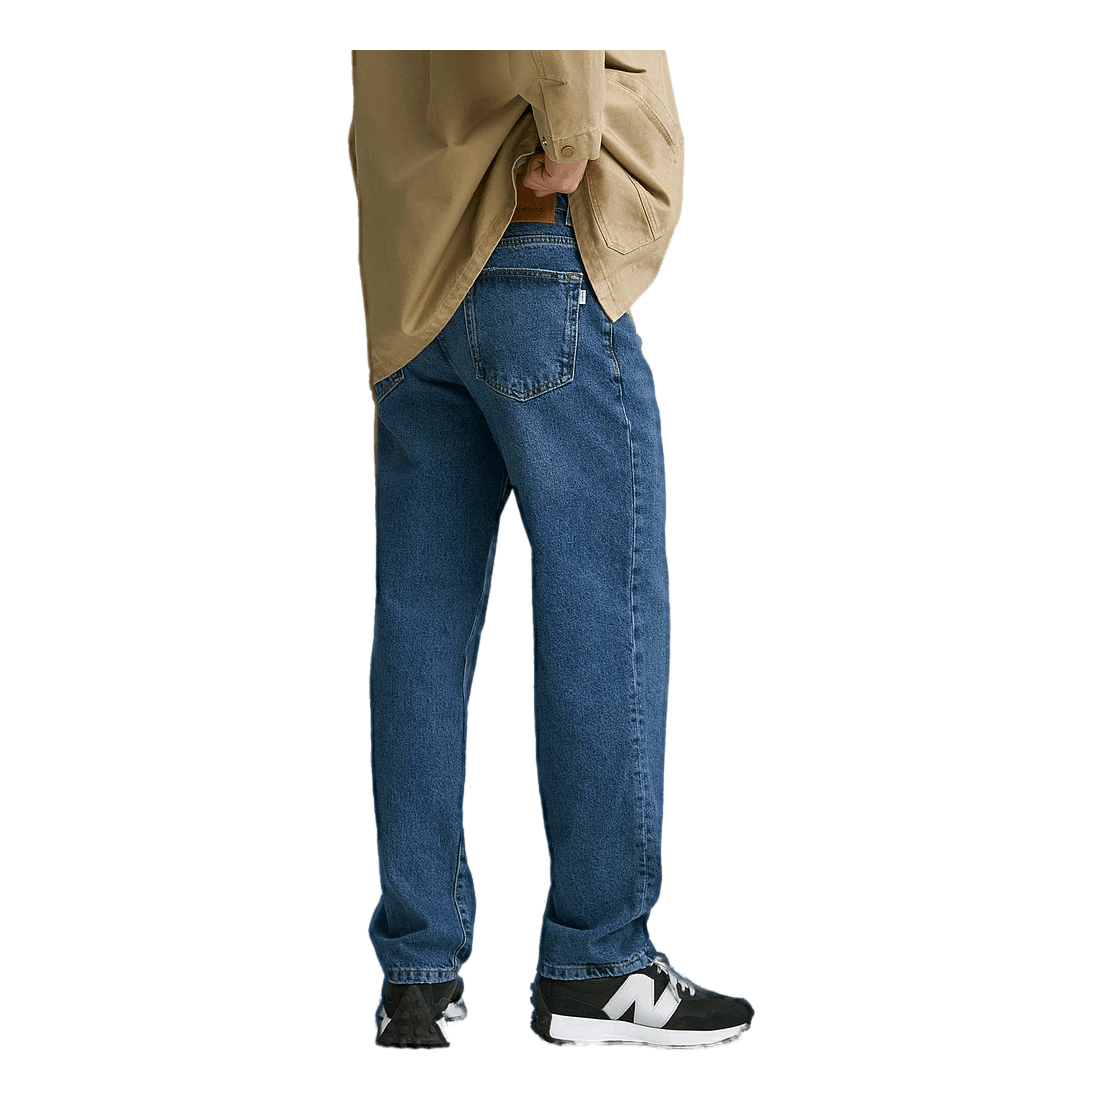 Leroy Blooke Jeans